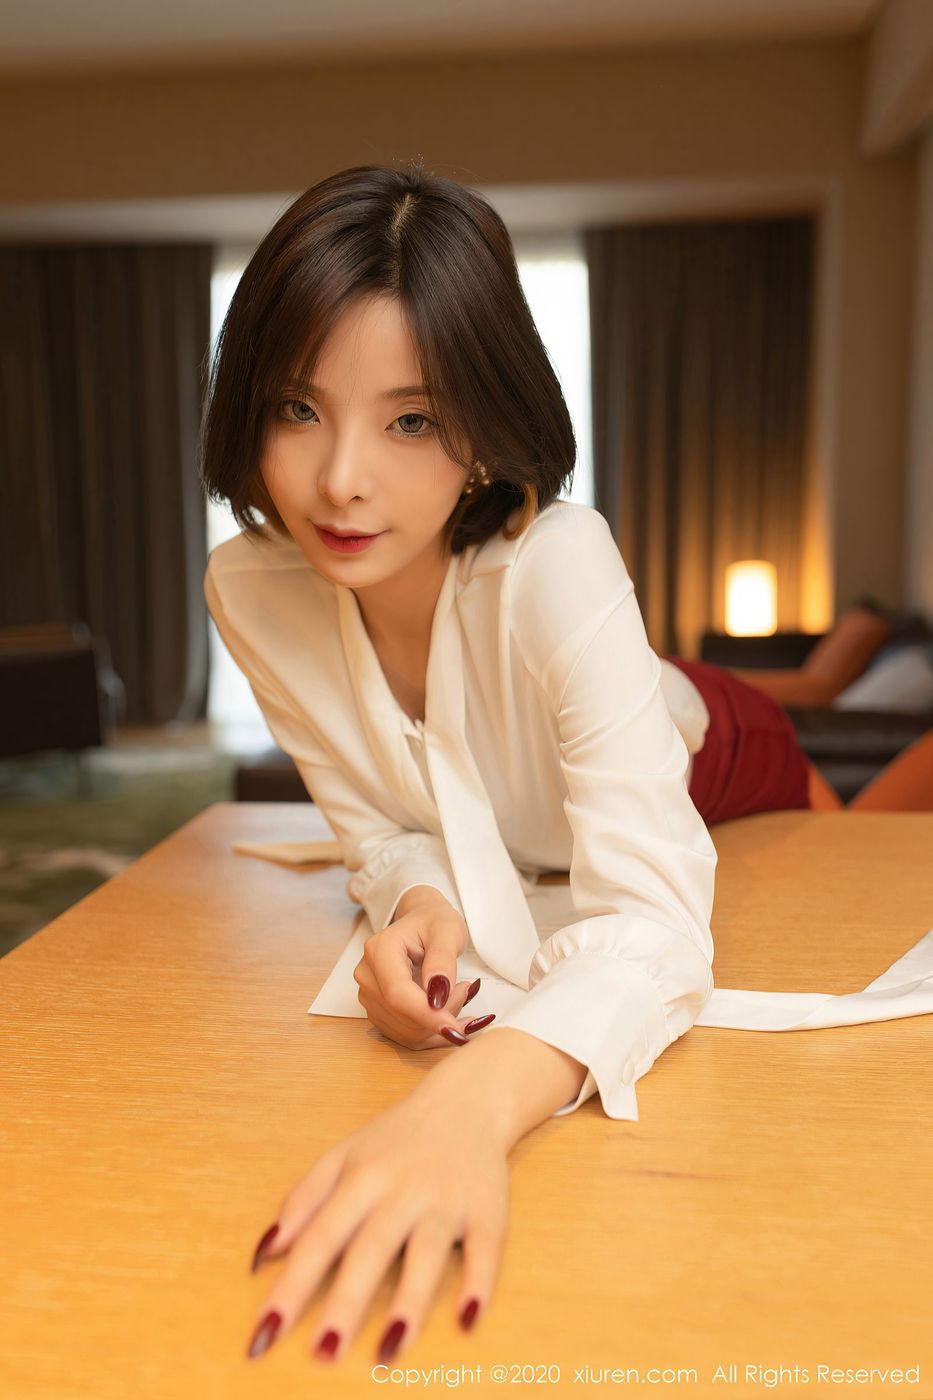 美女模特陈小喵秀人大电影演员招募主题性感写真